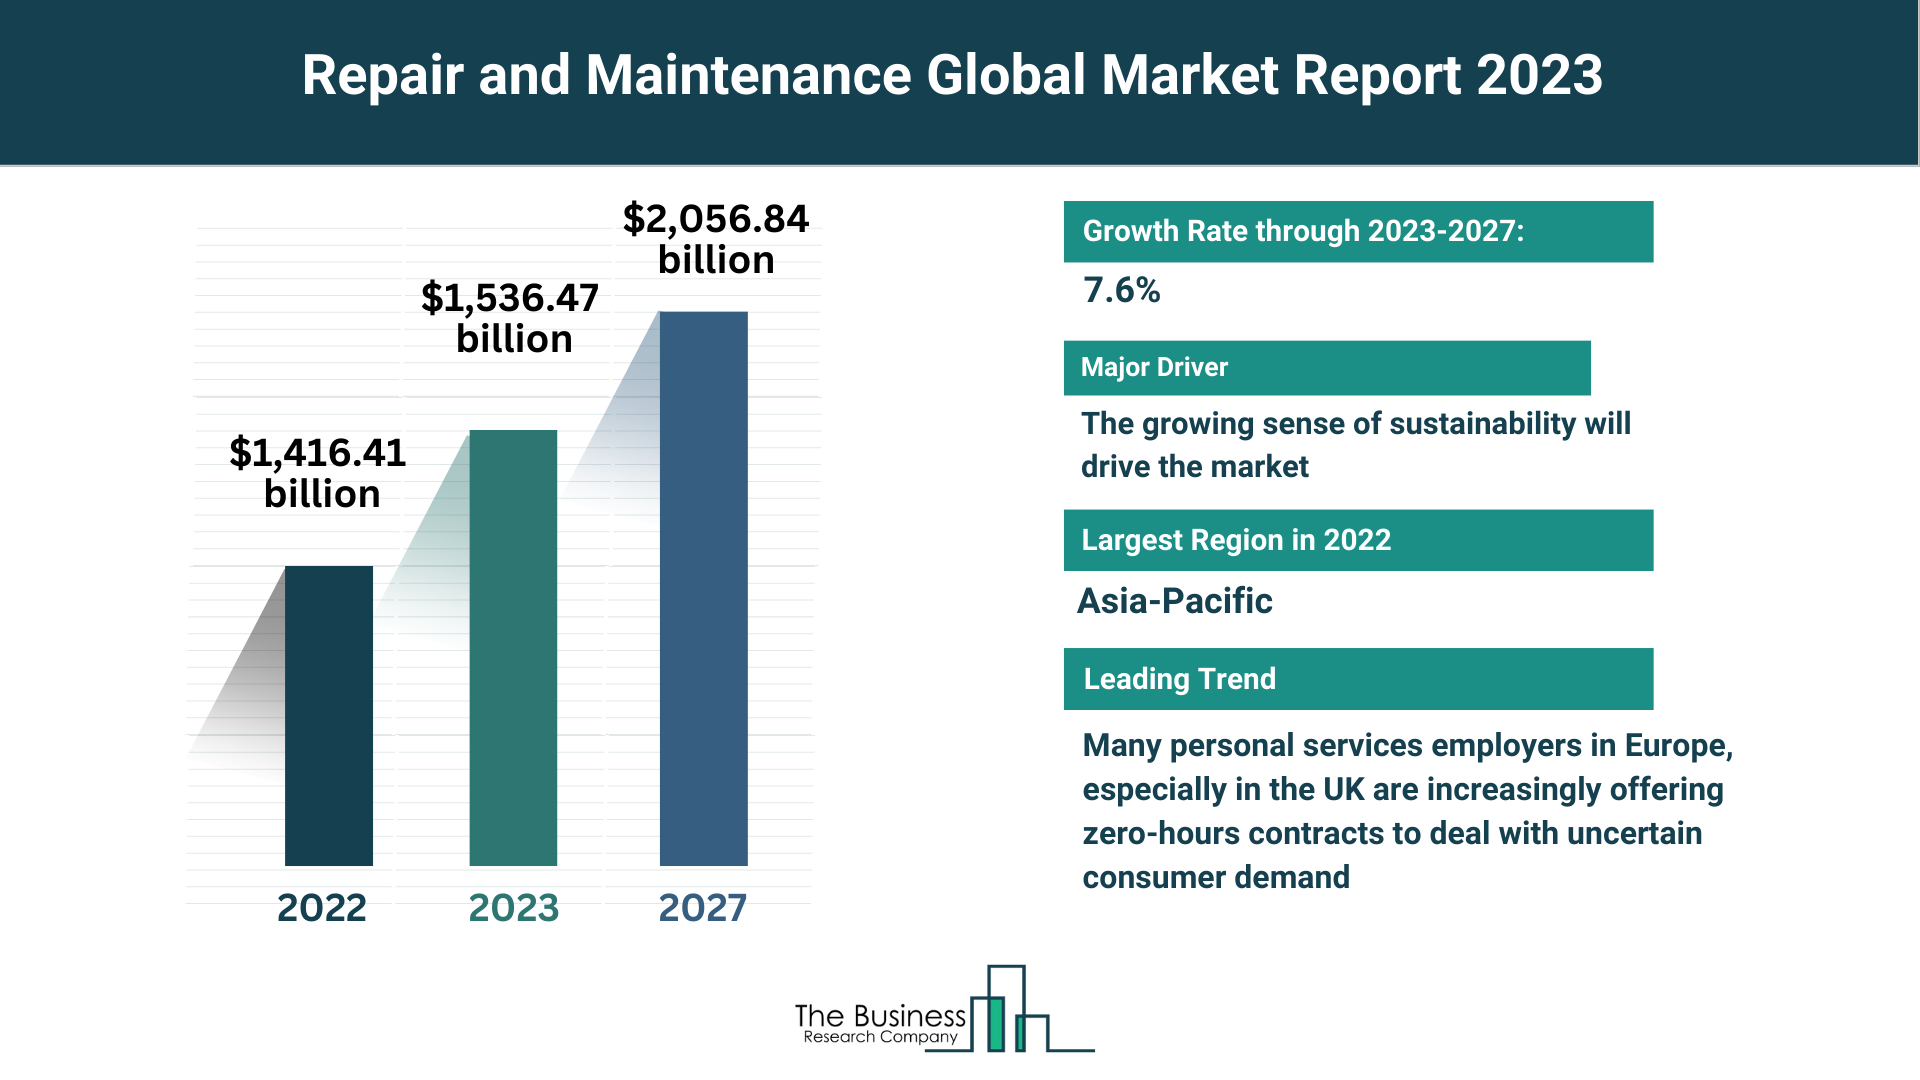 Global Repair and Maintenance Market